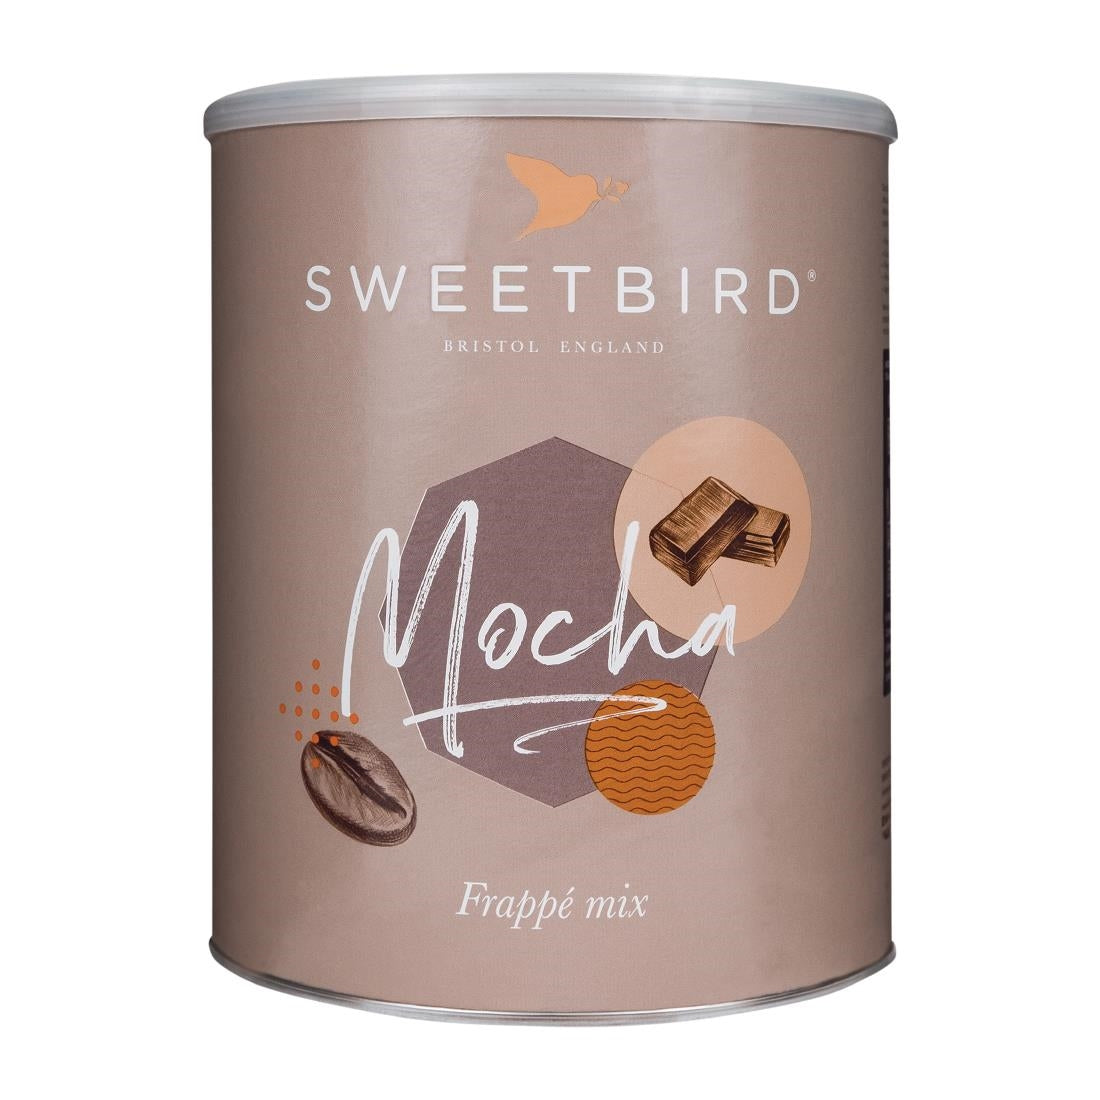 DX598 Sweetbird Mocha FrappÃ© Mix 2kg Tin